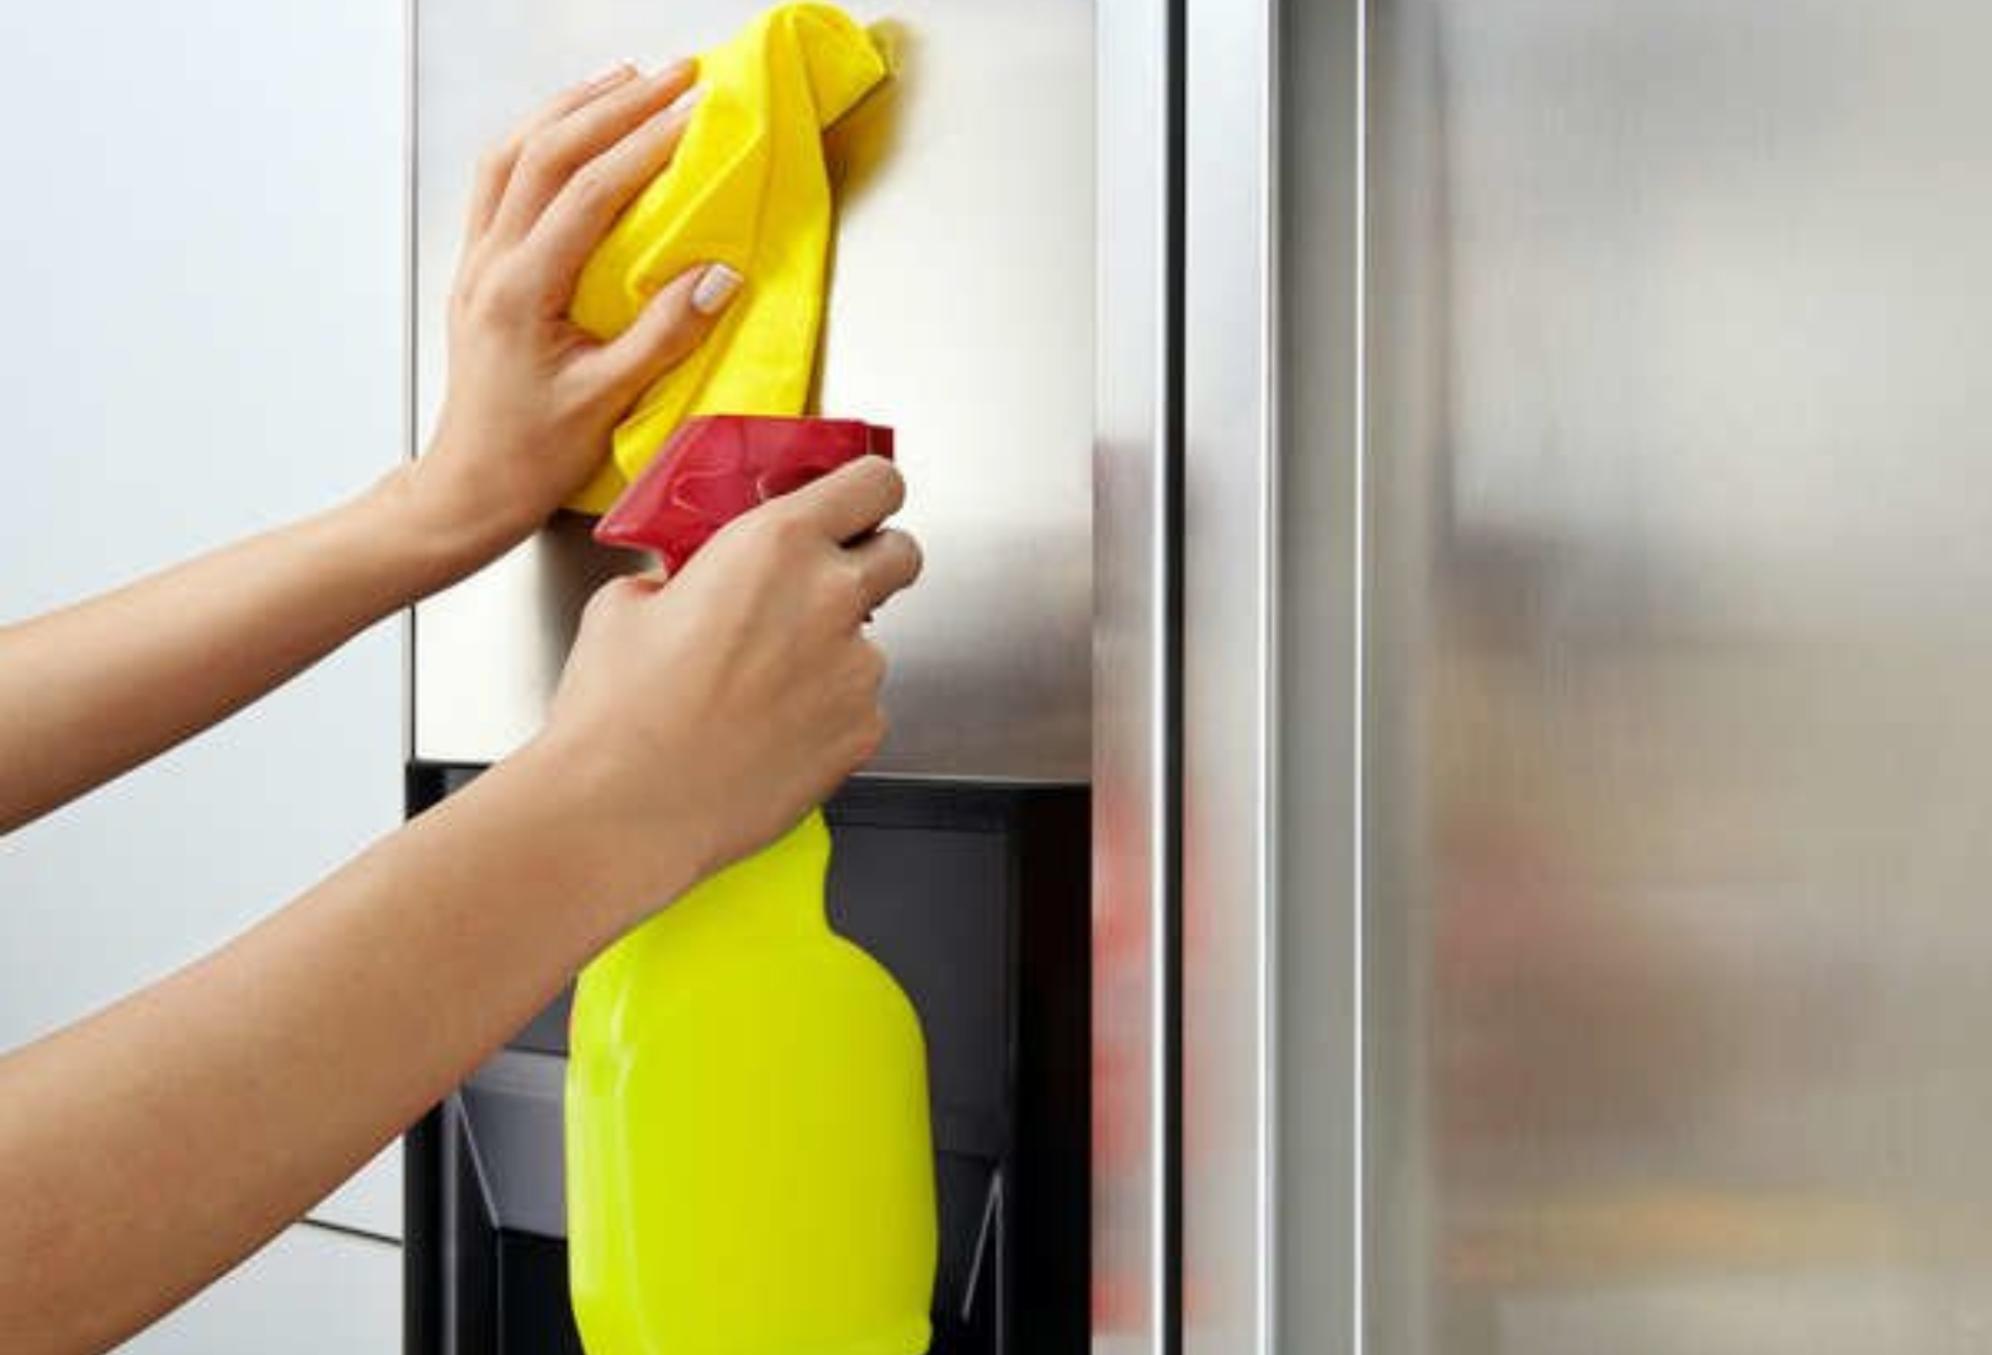 Βρωμιά μικρόβια και άσχημες μυρωδιές στην κουζίνα – Το μαγικό υλικό που θα σας απαλλάξει εύκολα και γρήγορα 